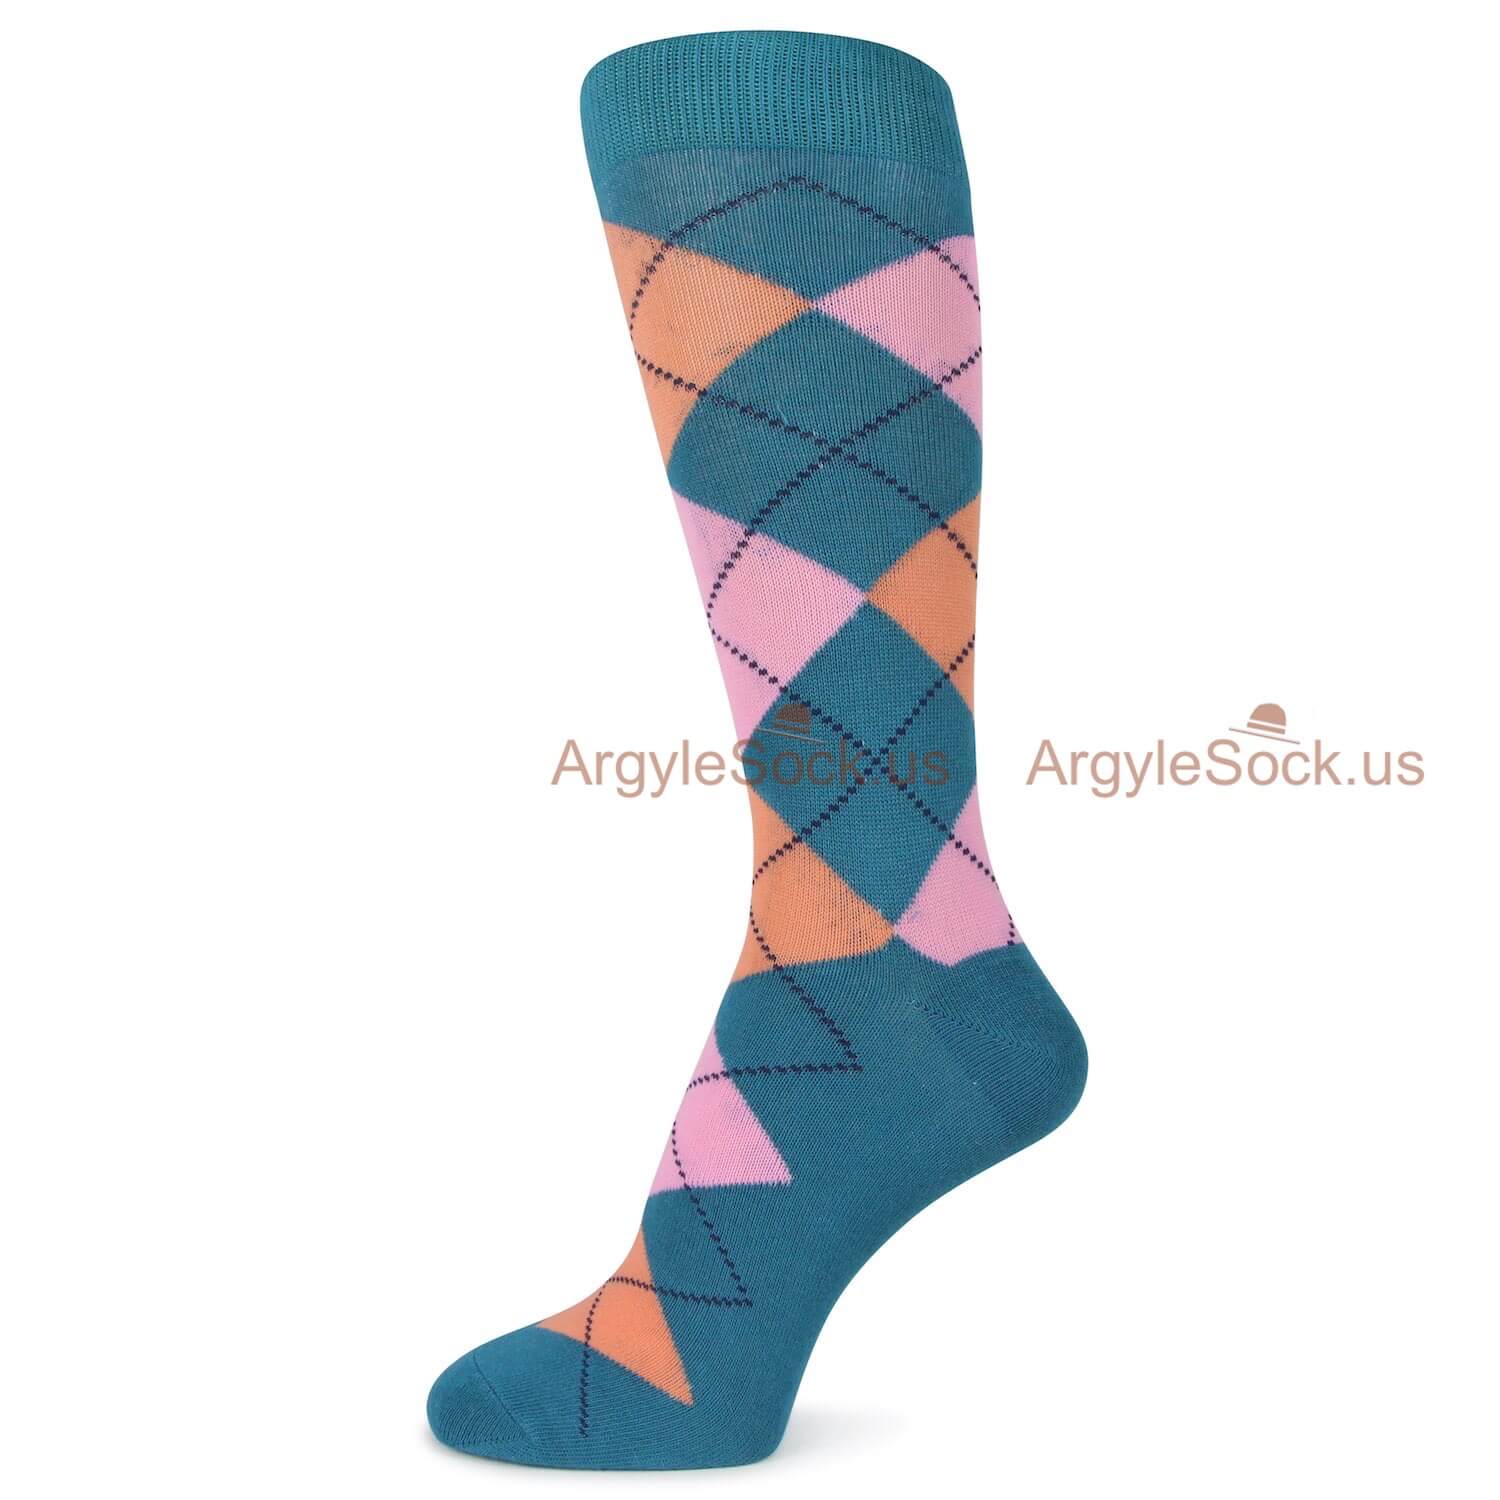 Aqua Blue Pink and Peach Argyle Socks For Men